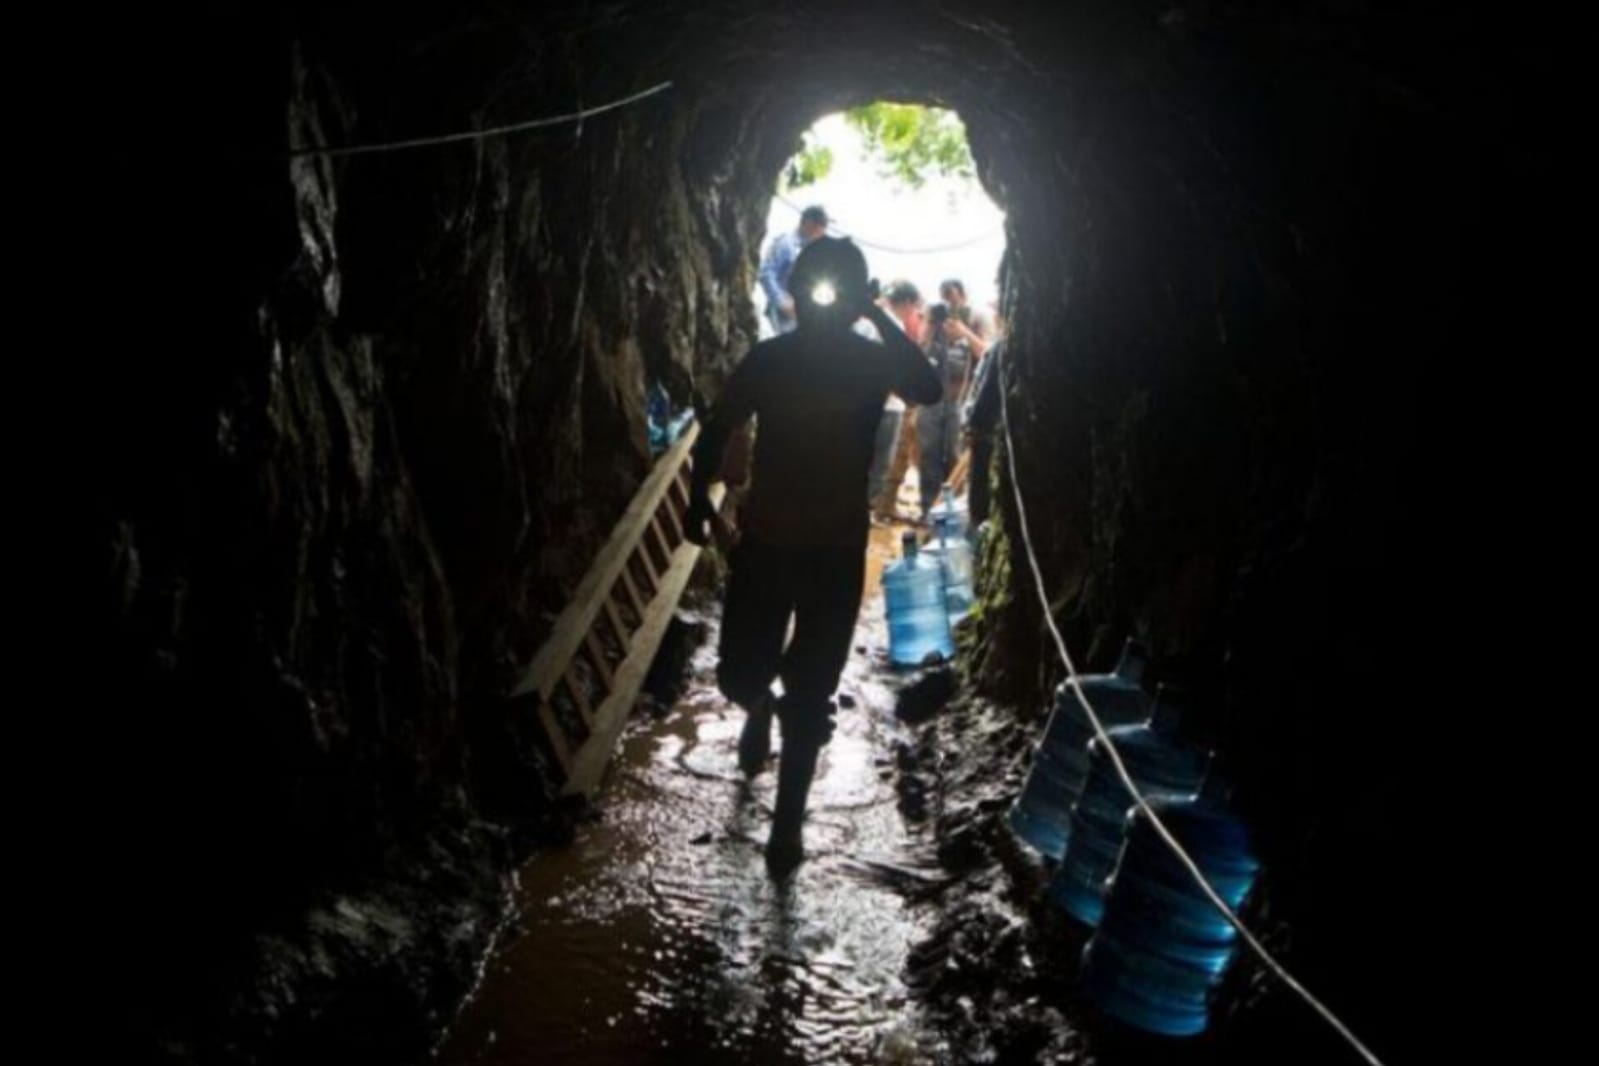 mineros soterrados nicaragua